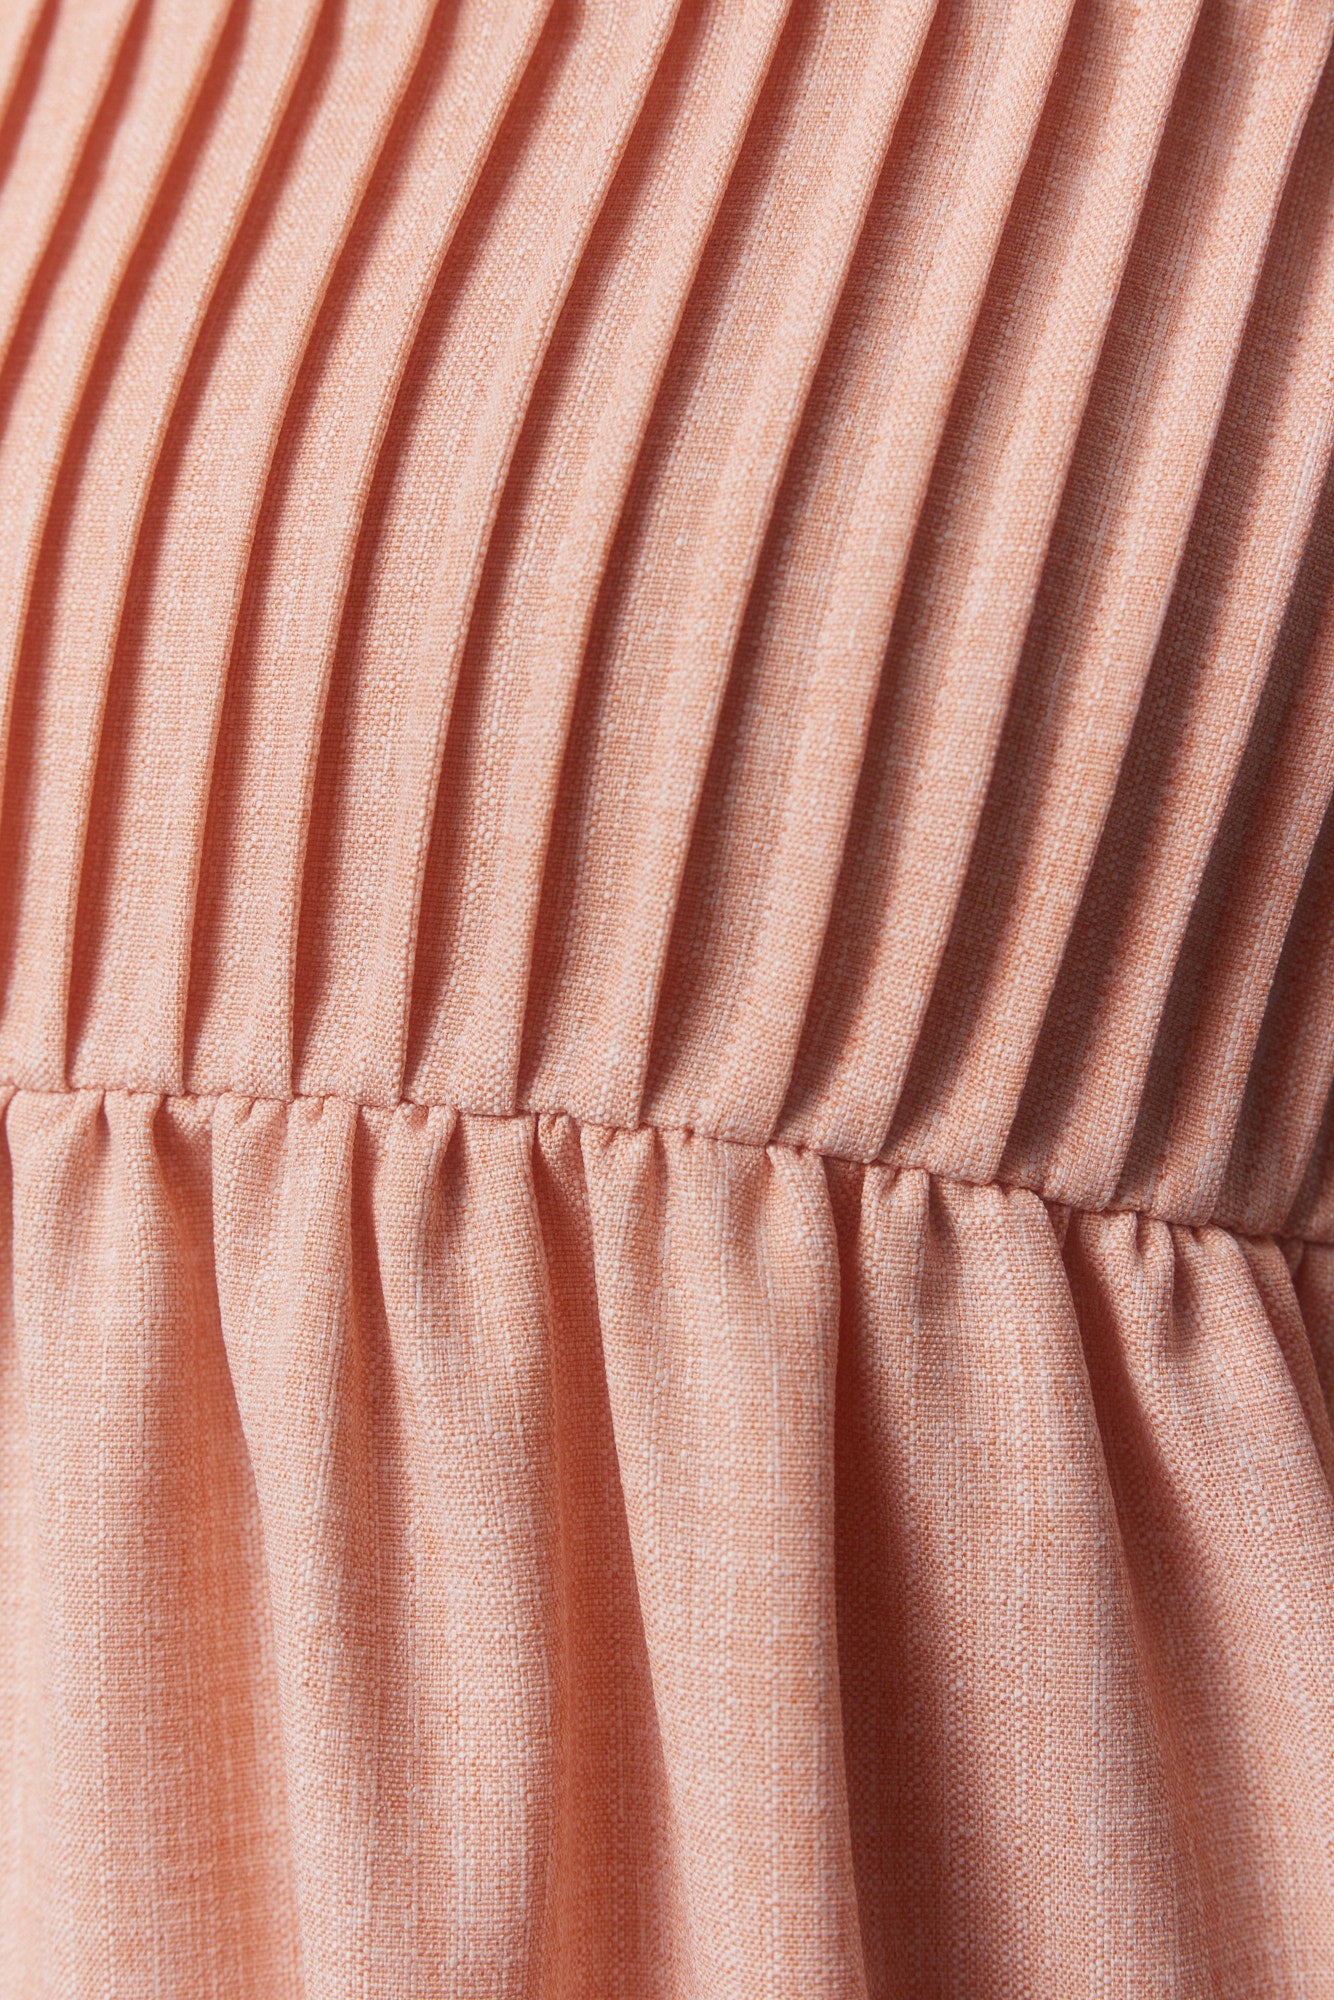 Robe courte rose texturé à bretelles larges | Dimico JOELLE Collection